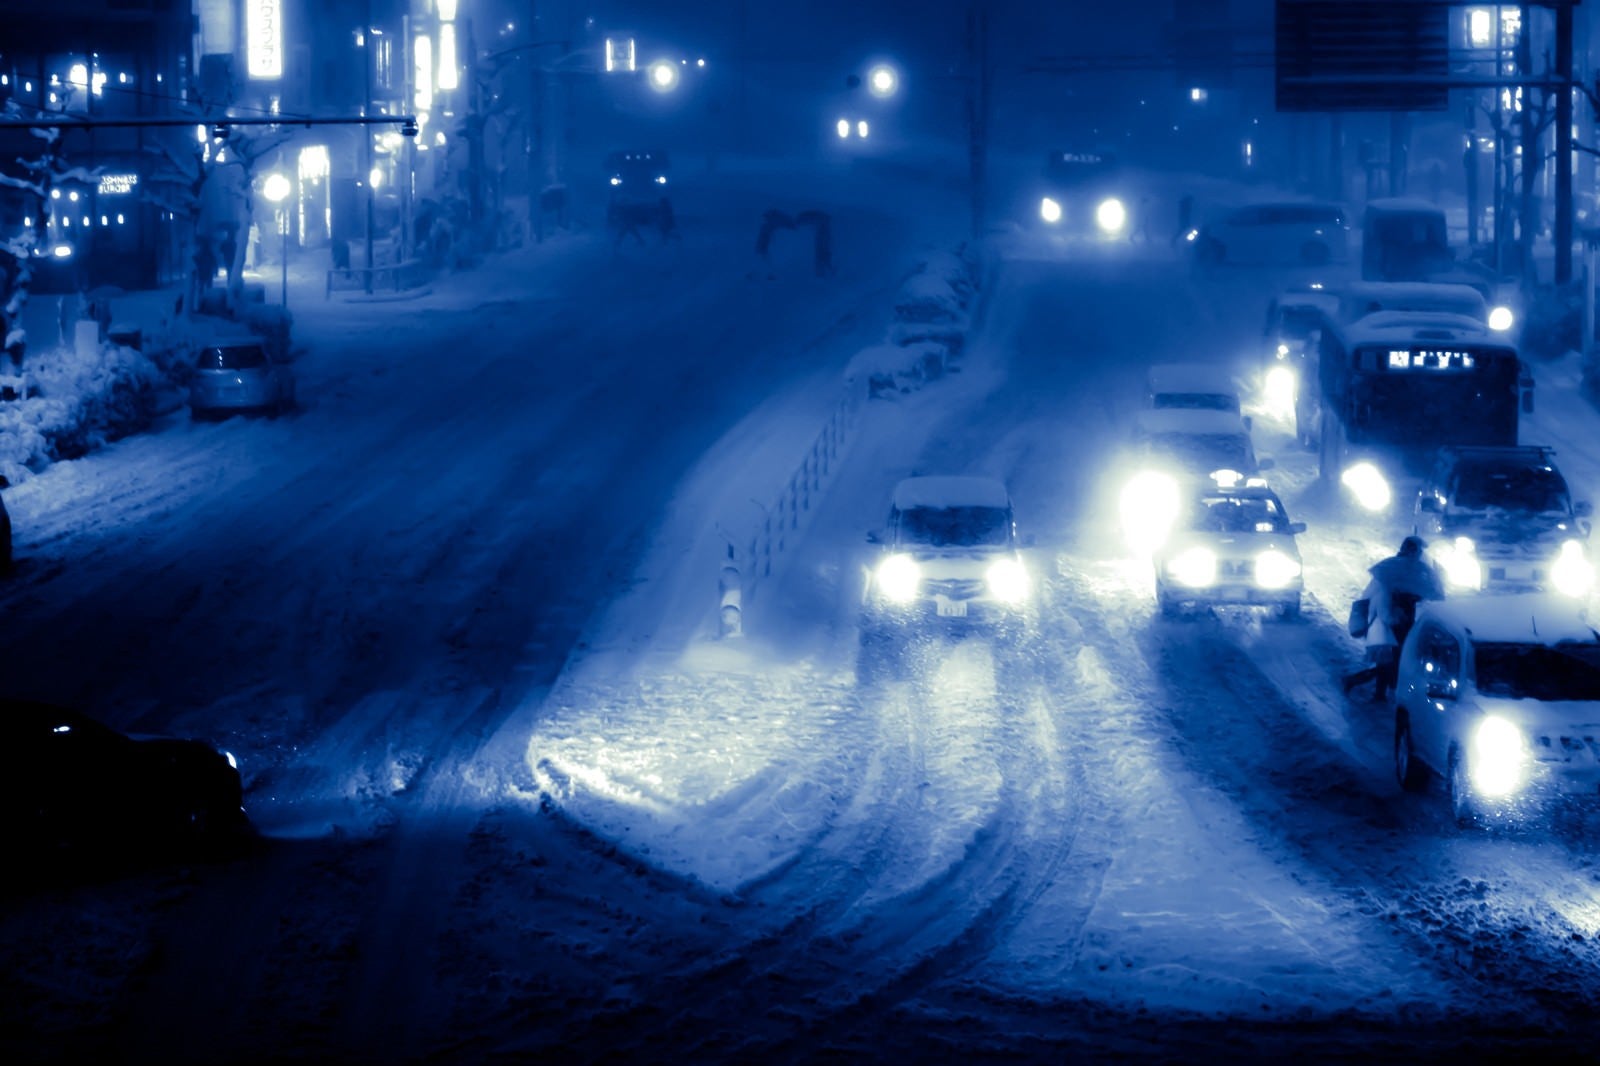 「雪が降り積もる夜の幹線道路」の写真